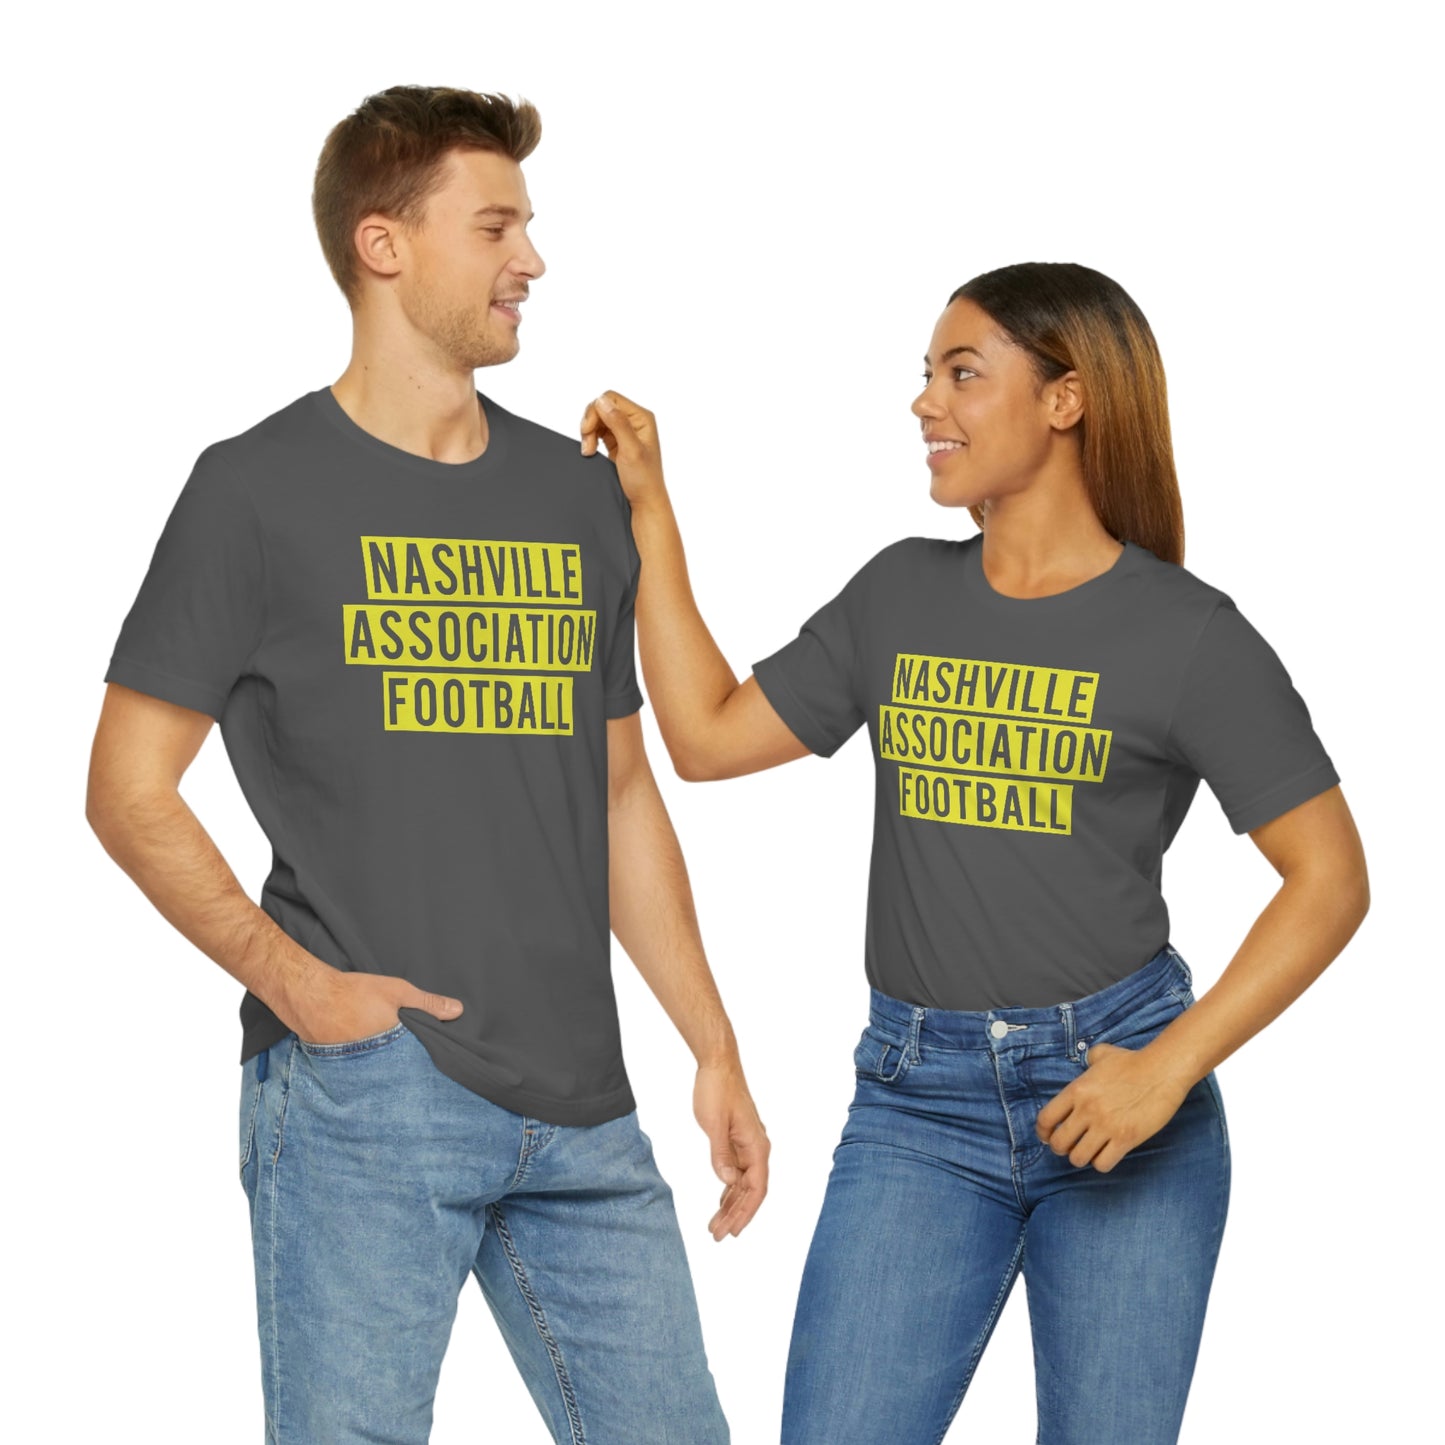 Nashville Association Football Blocky T shirt